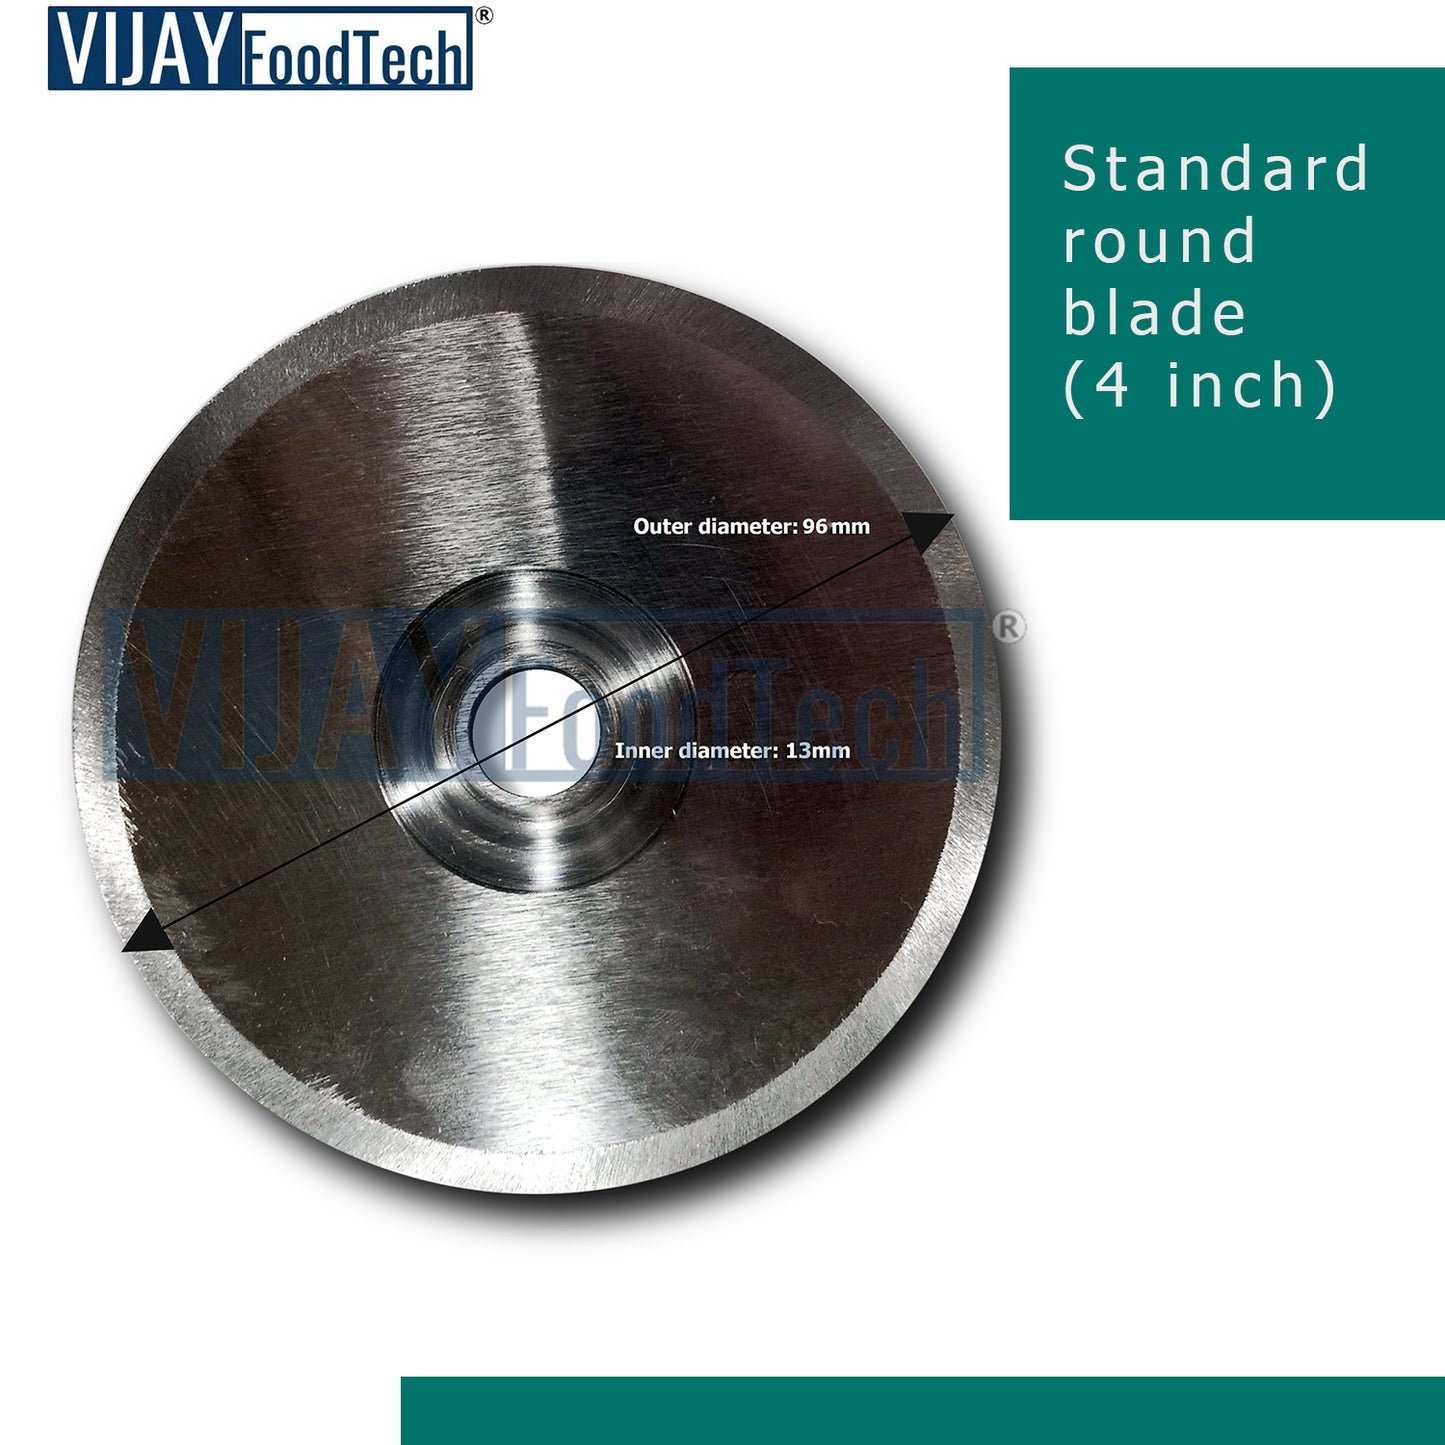 Standard round blade